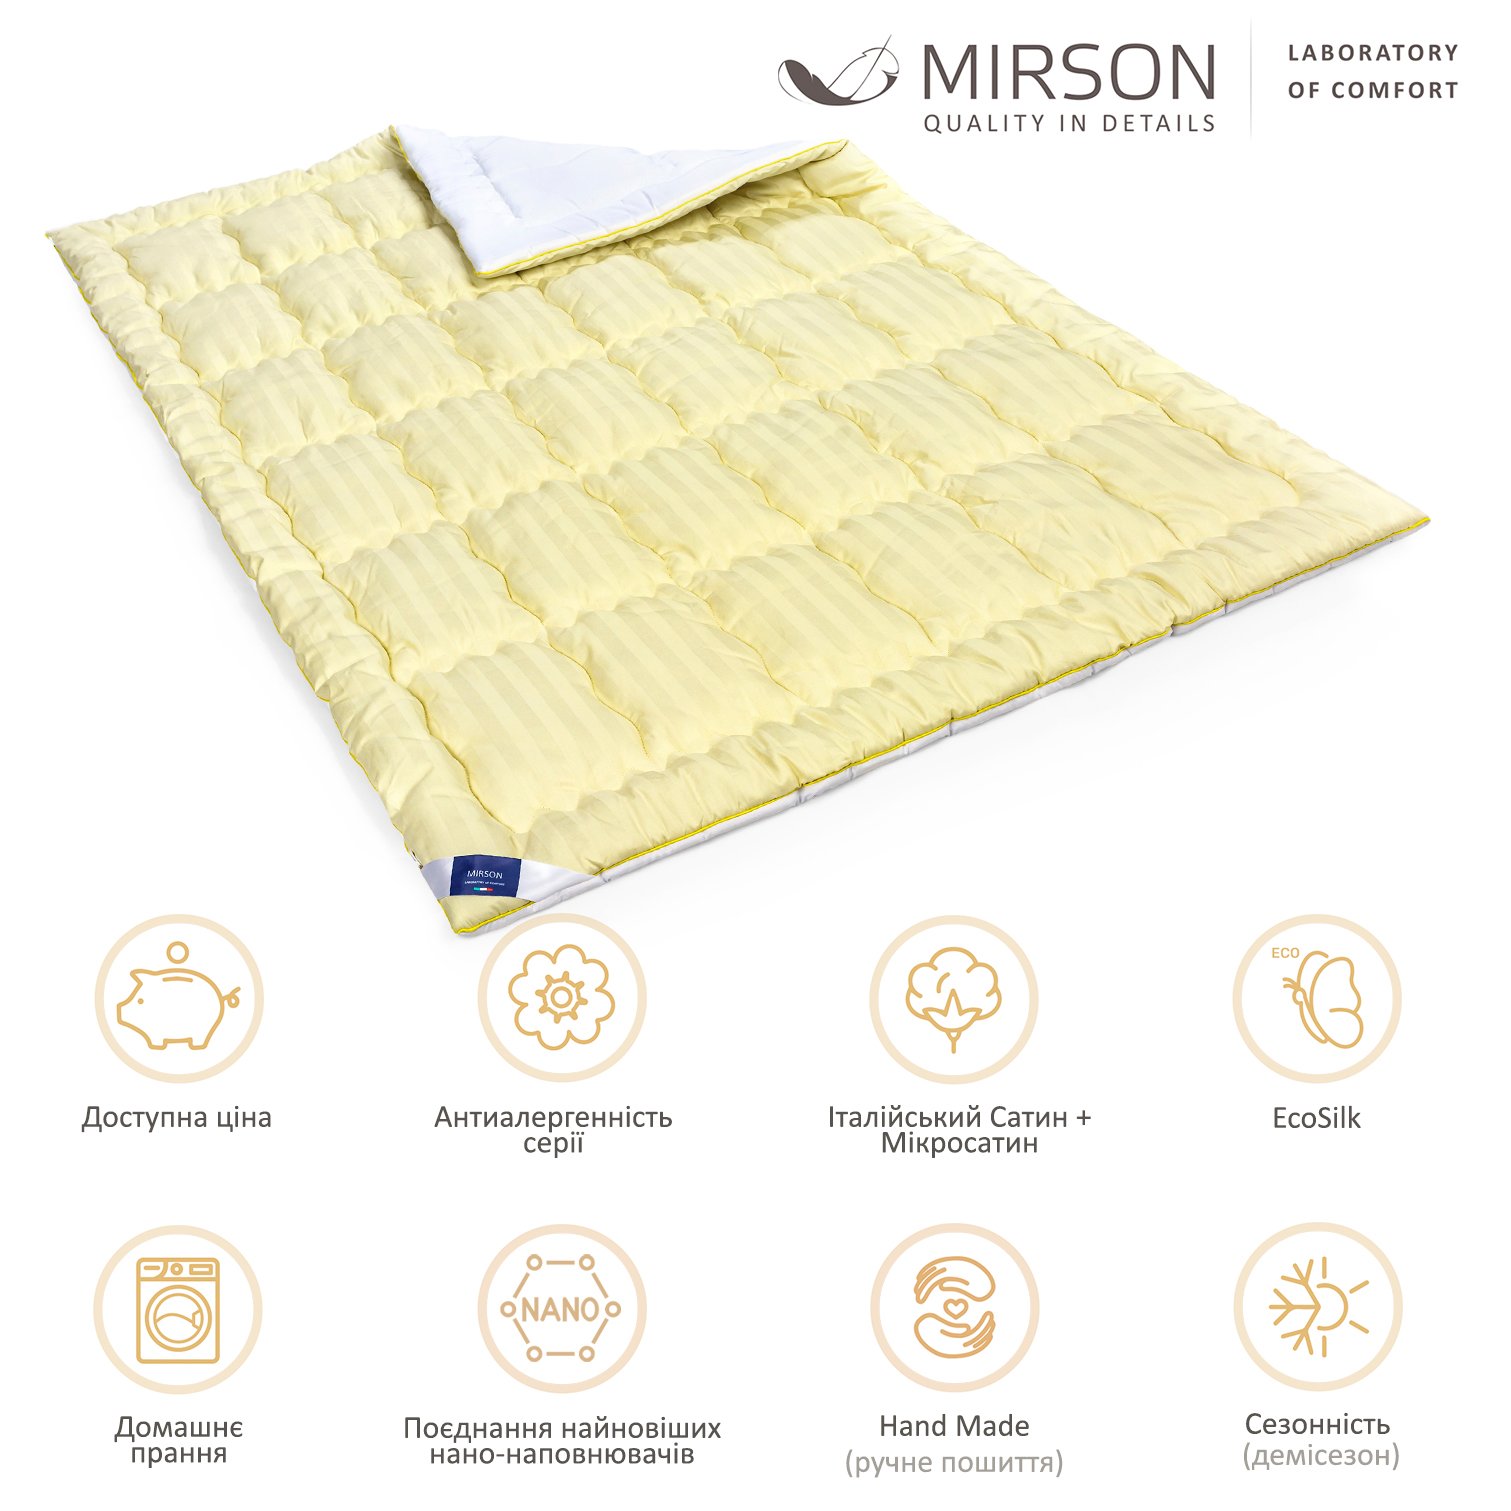 Одеяло антиаллергенное MirSon Carmela Hand Made EcoSilk №0552, демисезонное, 200x220 см, желто-белое - фото 6